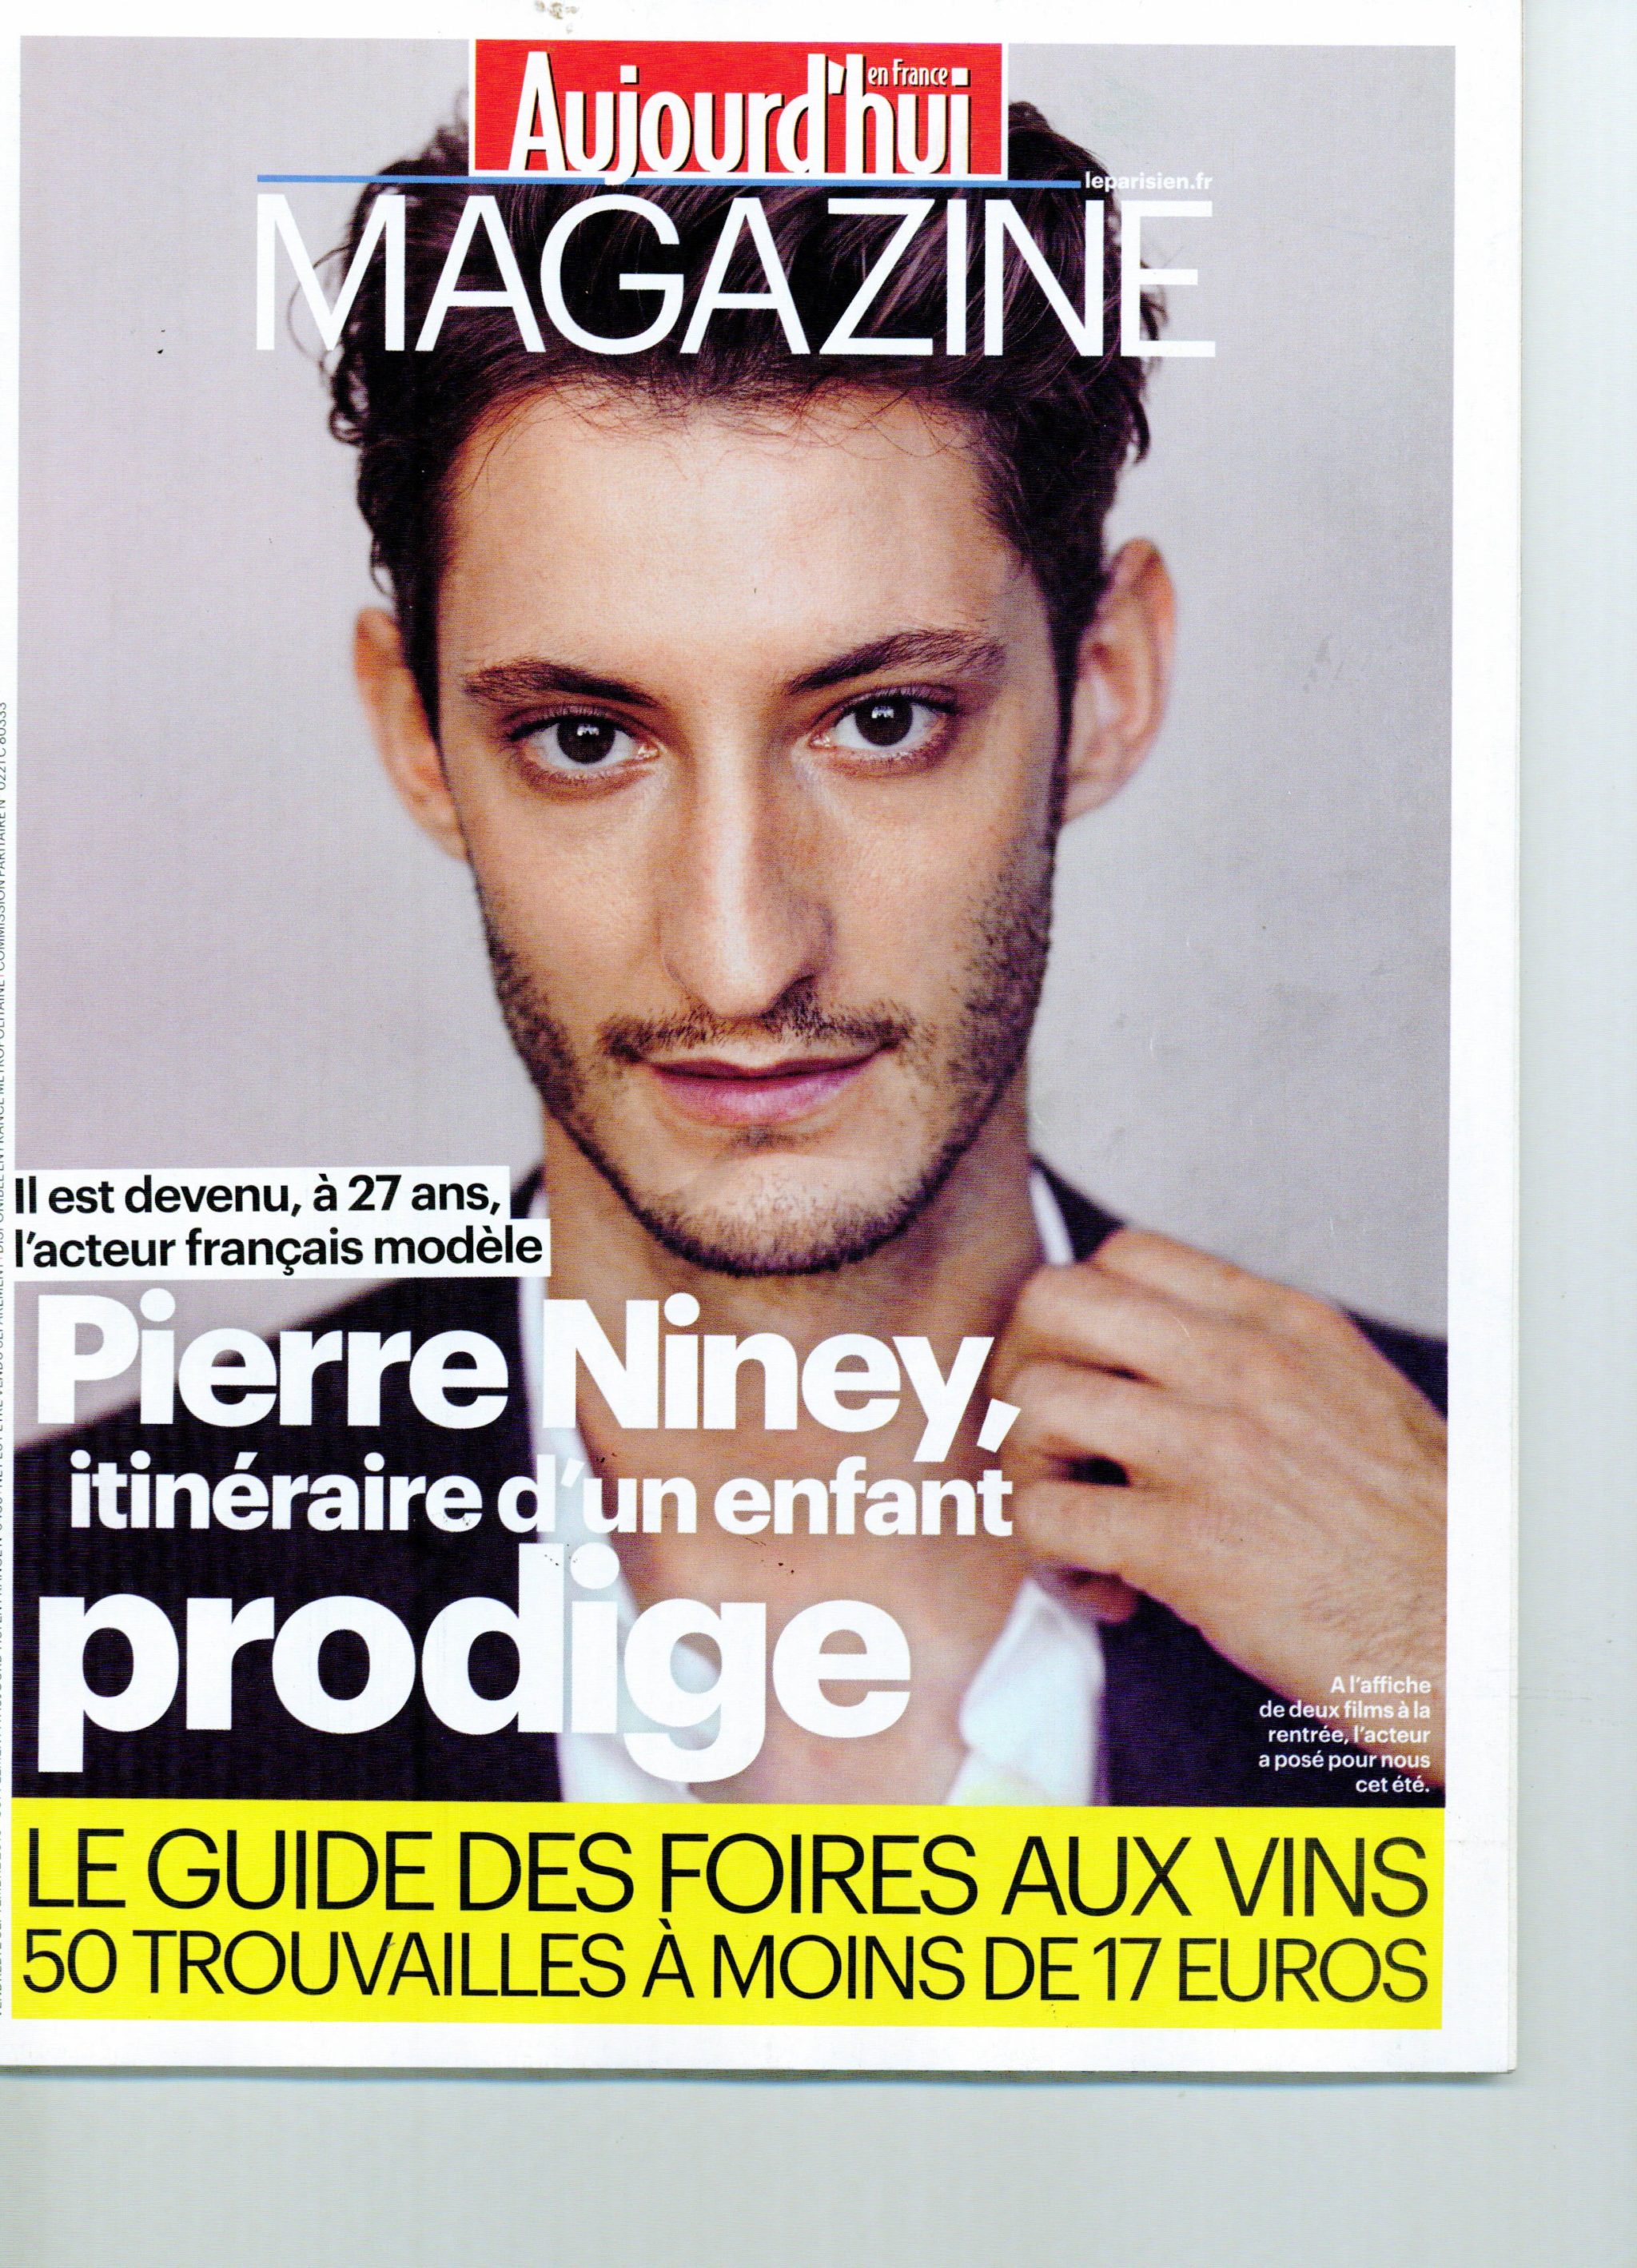 aujourd’hui en france magazine / guide des foires aux vins / languedoc rouge 2015